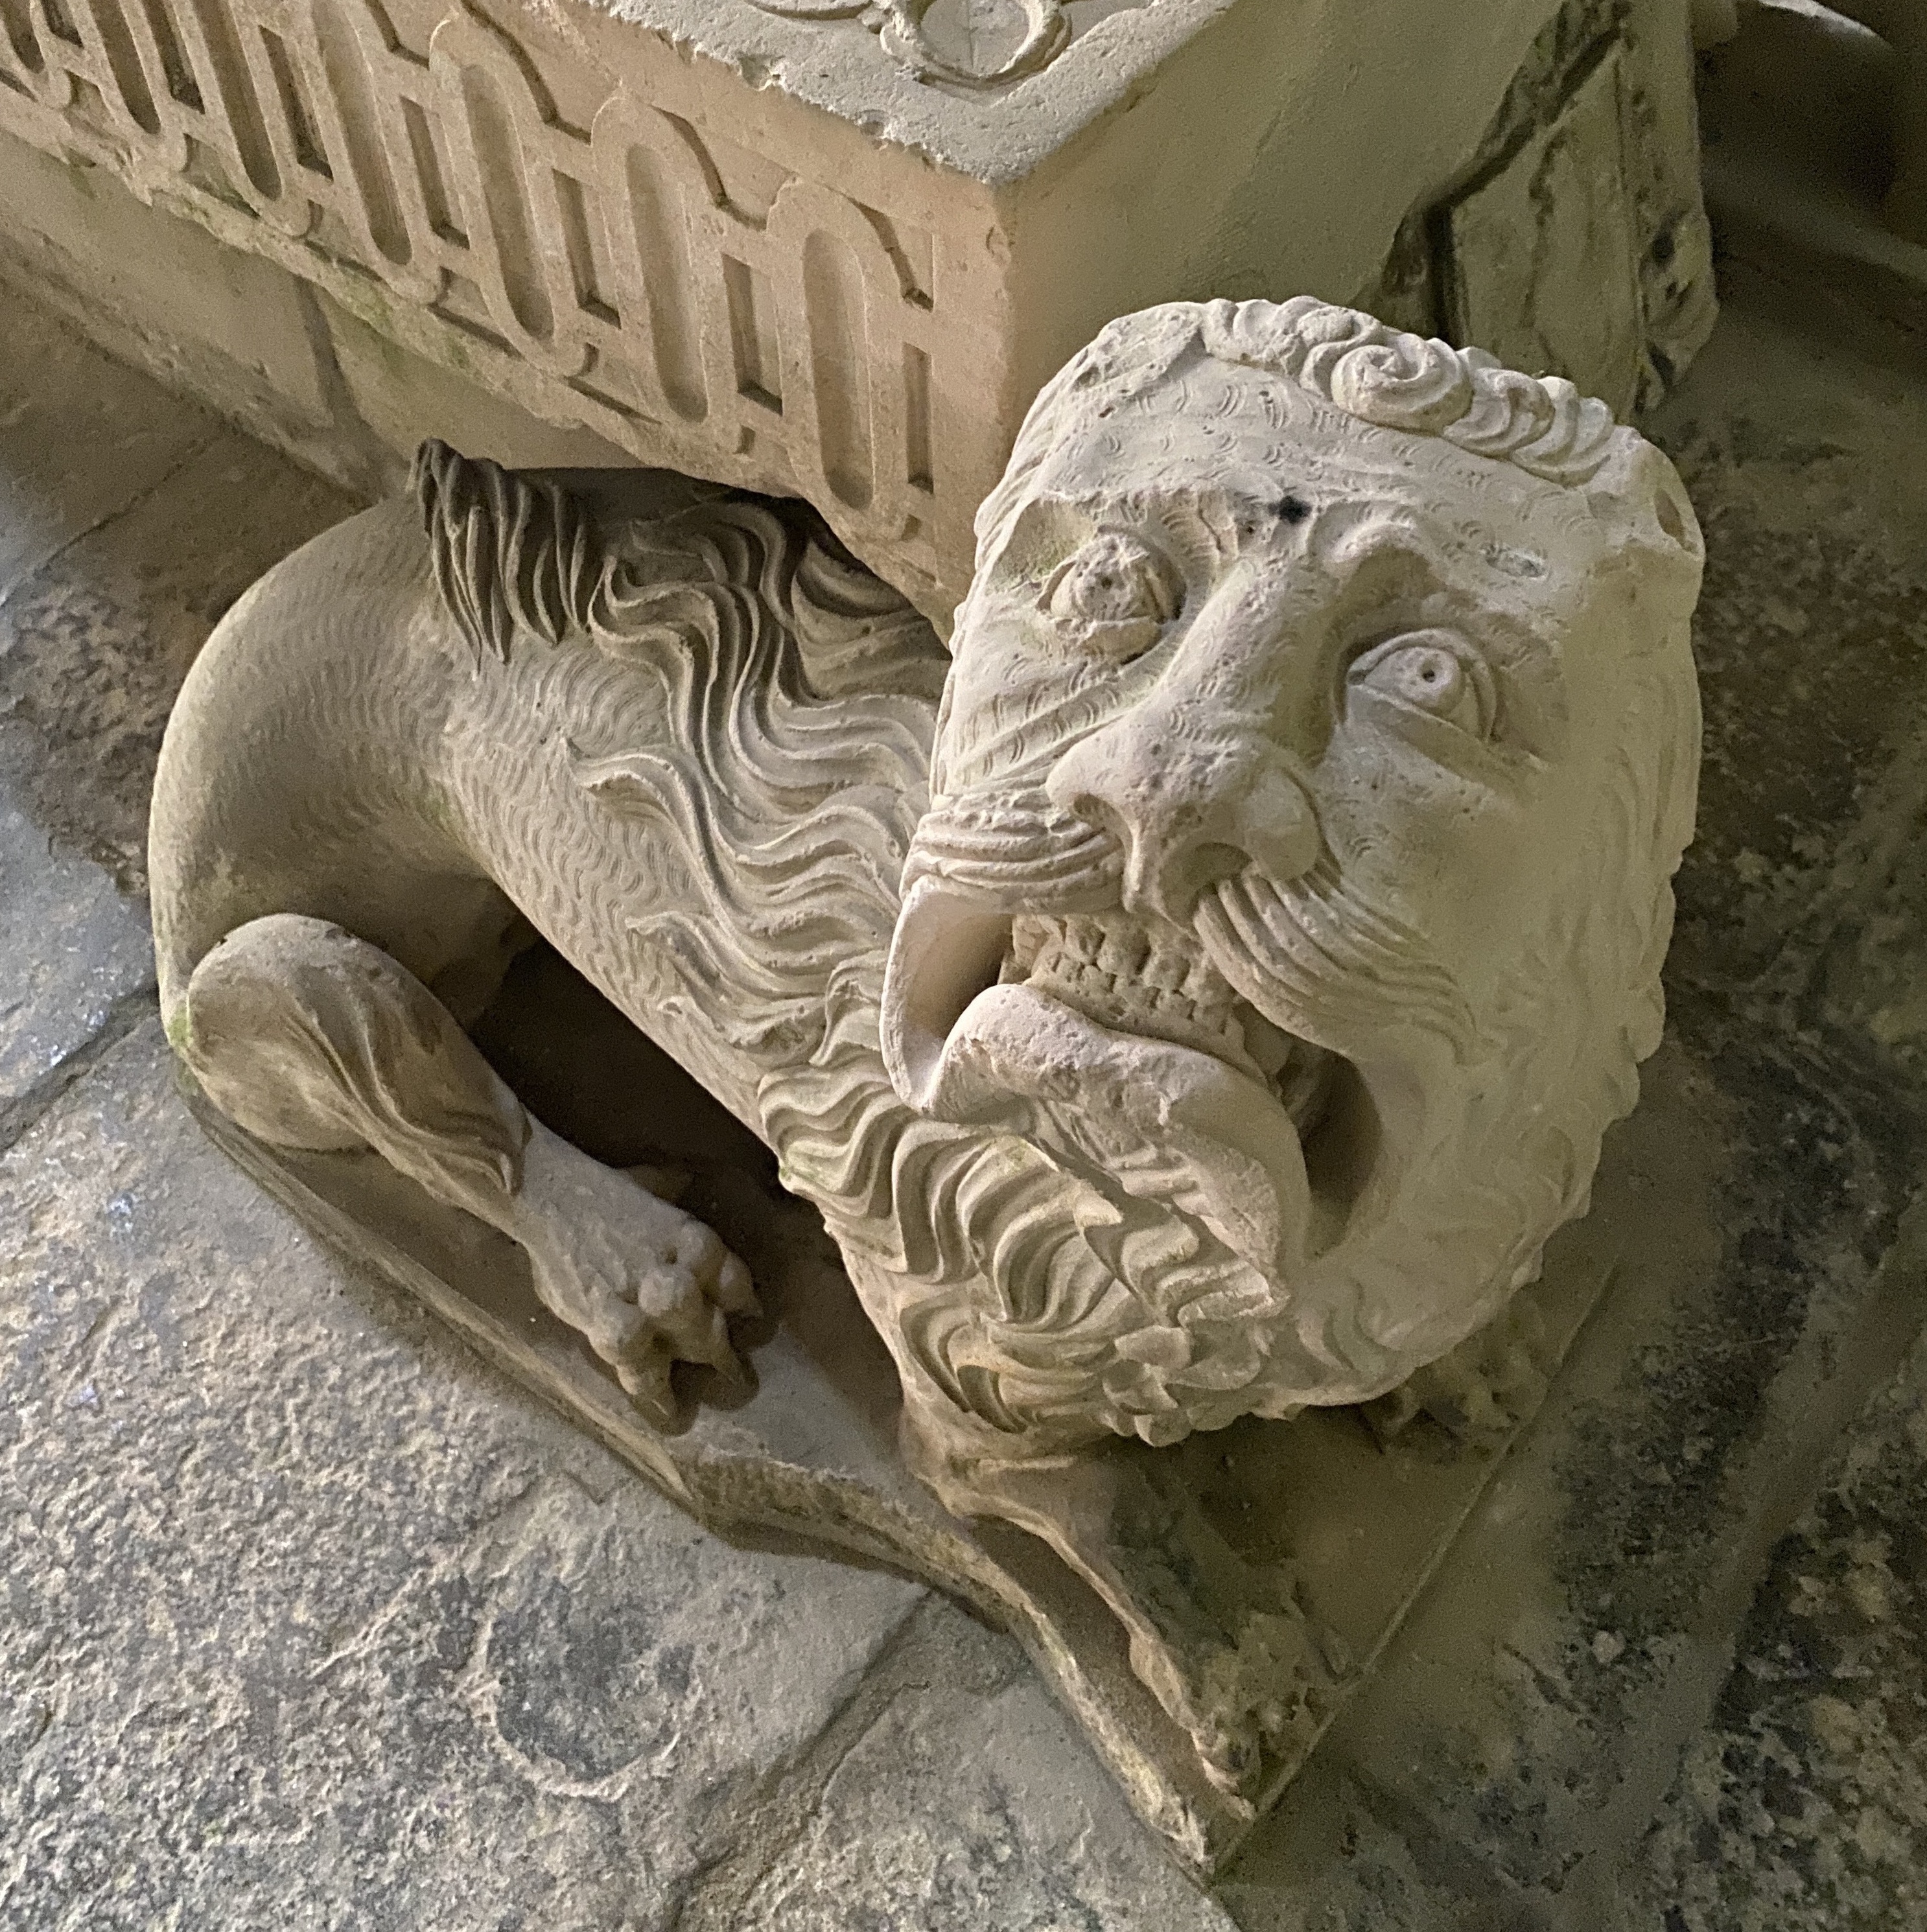 Figure 4: A medieval sculpture of a lion